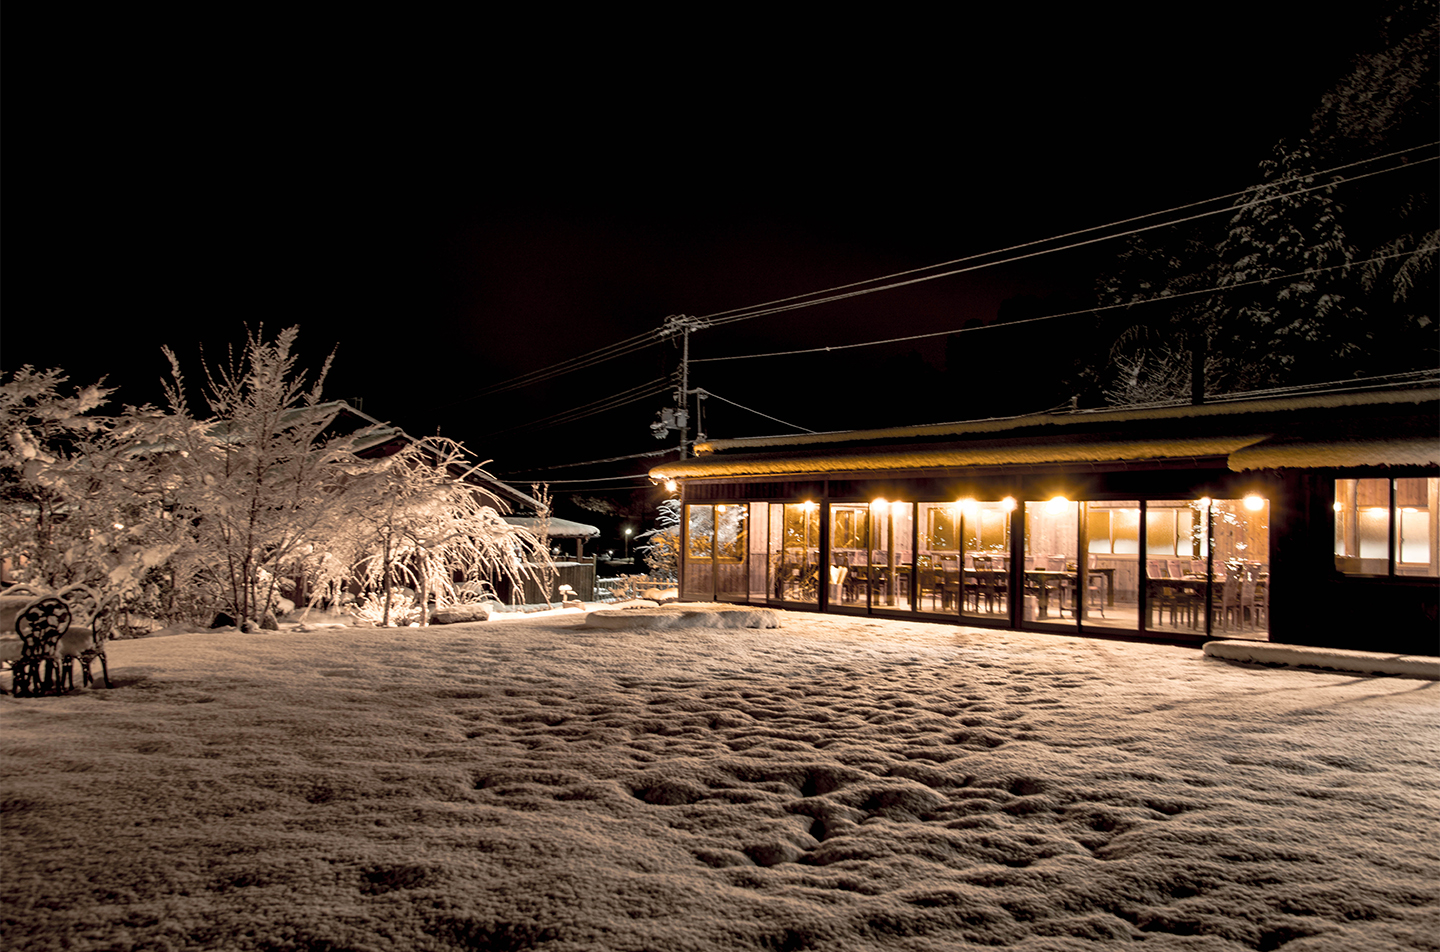 綾部市の和食レストラン ゆう月の冬の画像 雪の庭園 イルミネーション